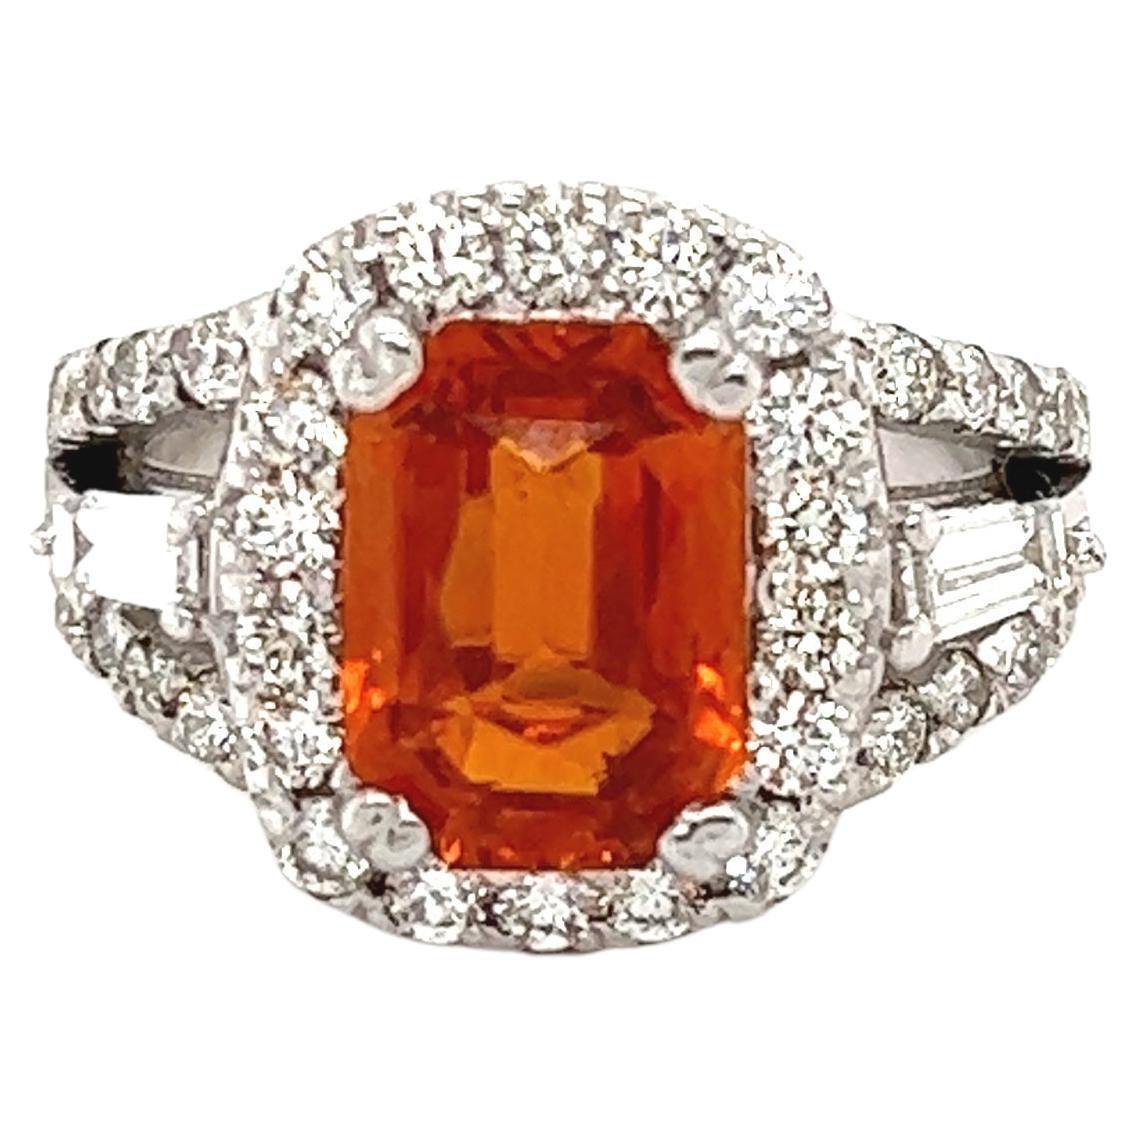 5.18 Carat GIA Certified Orange Sapphire Diamond 18 Karat White Gold Ring